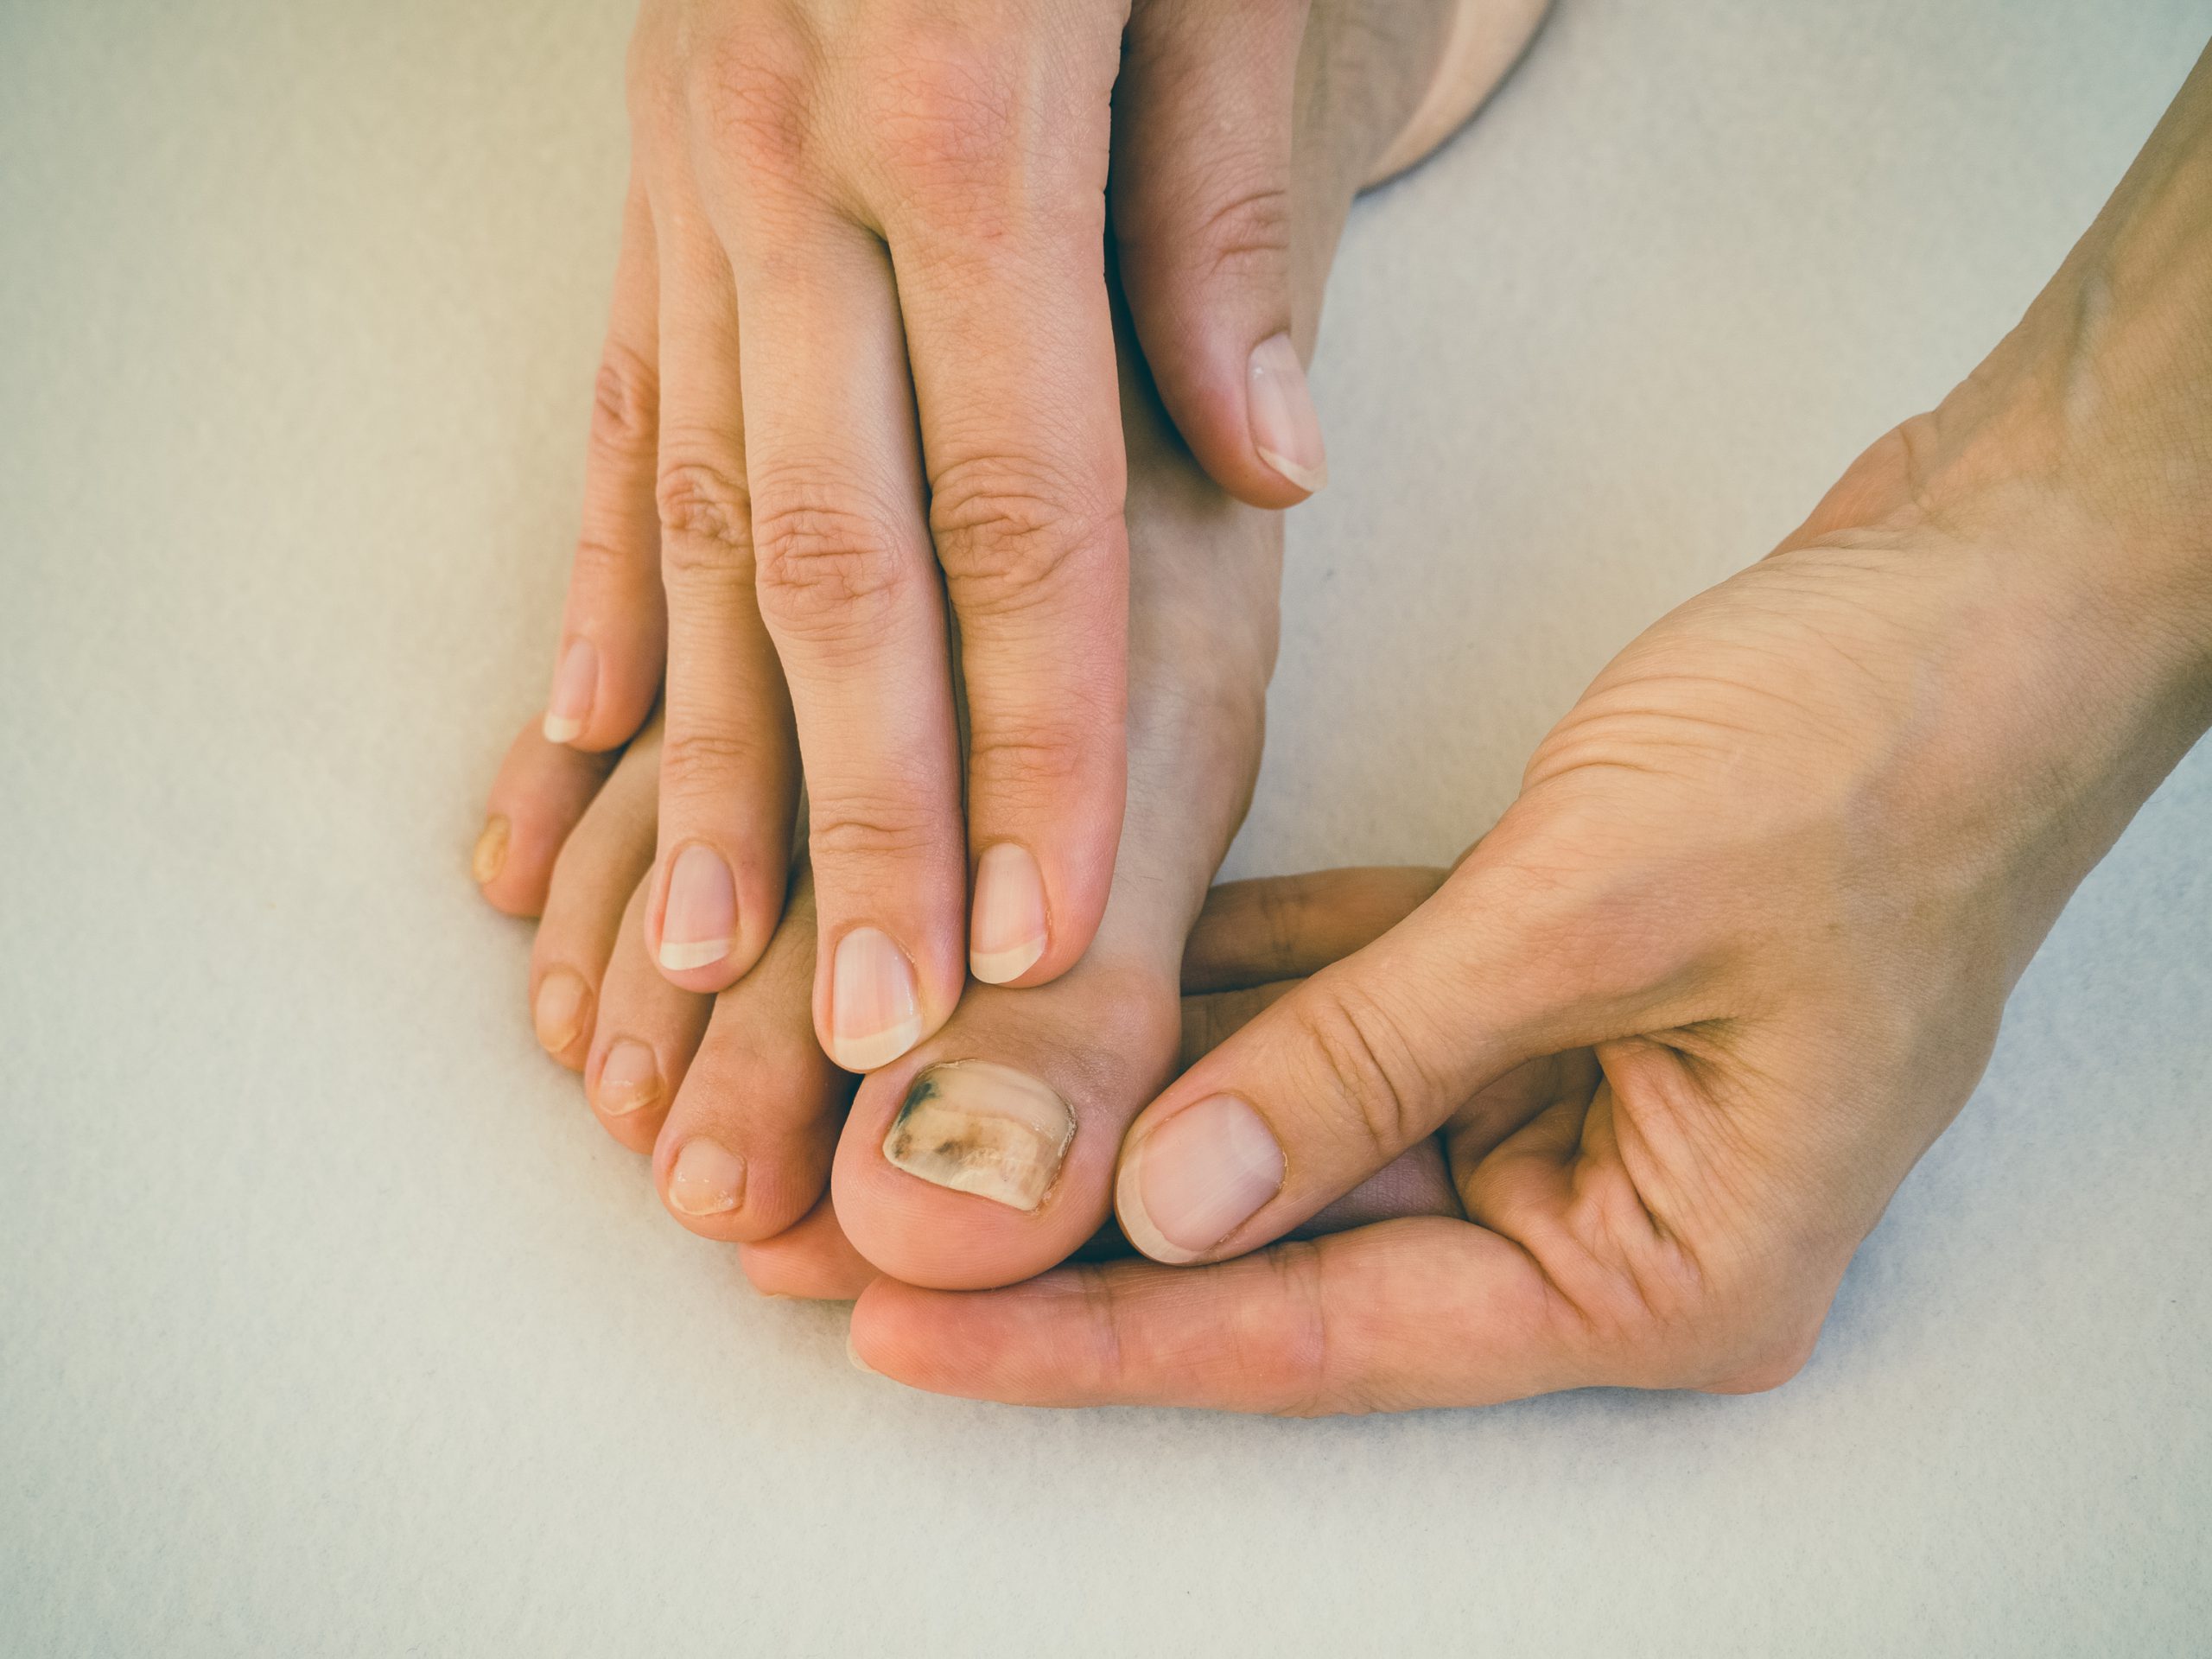 brzydkie paznokcie u stop pokonaj ten problem boskie stopy boze narodzenie czerwone i zielone milosc do zdobienia paznokci